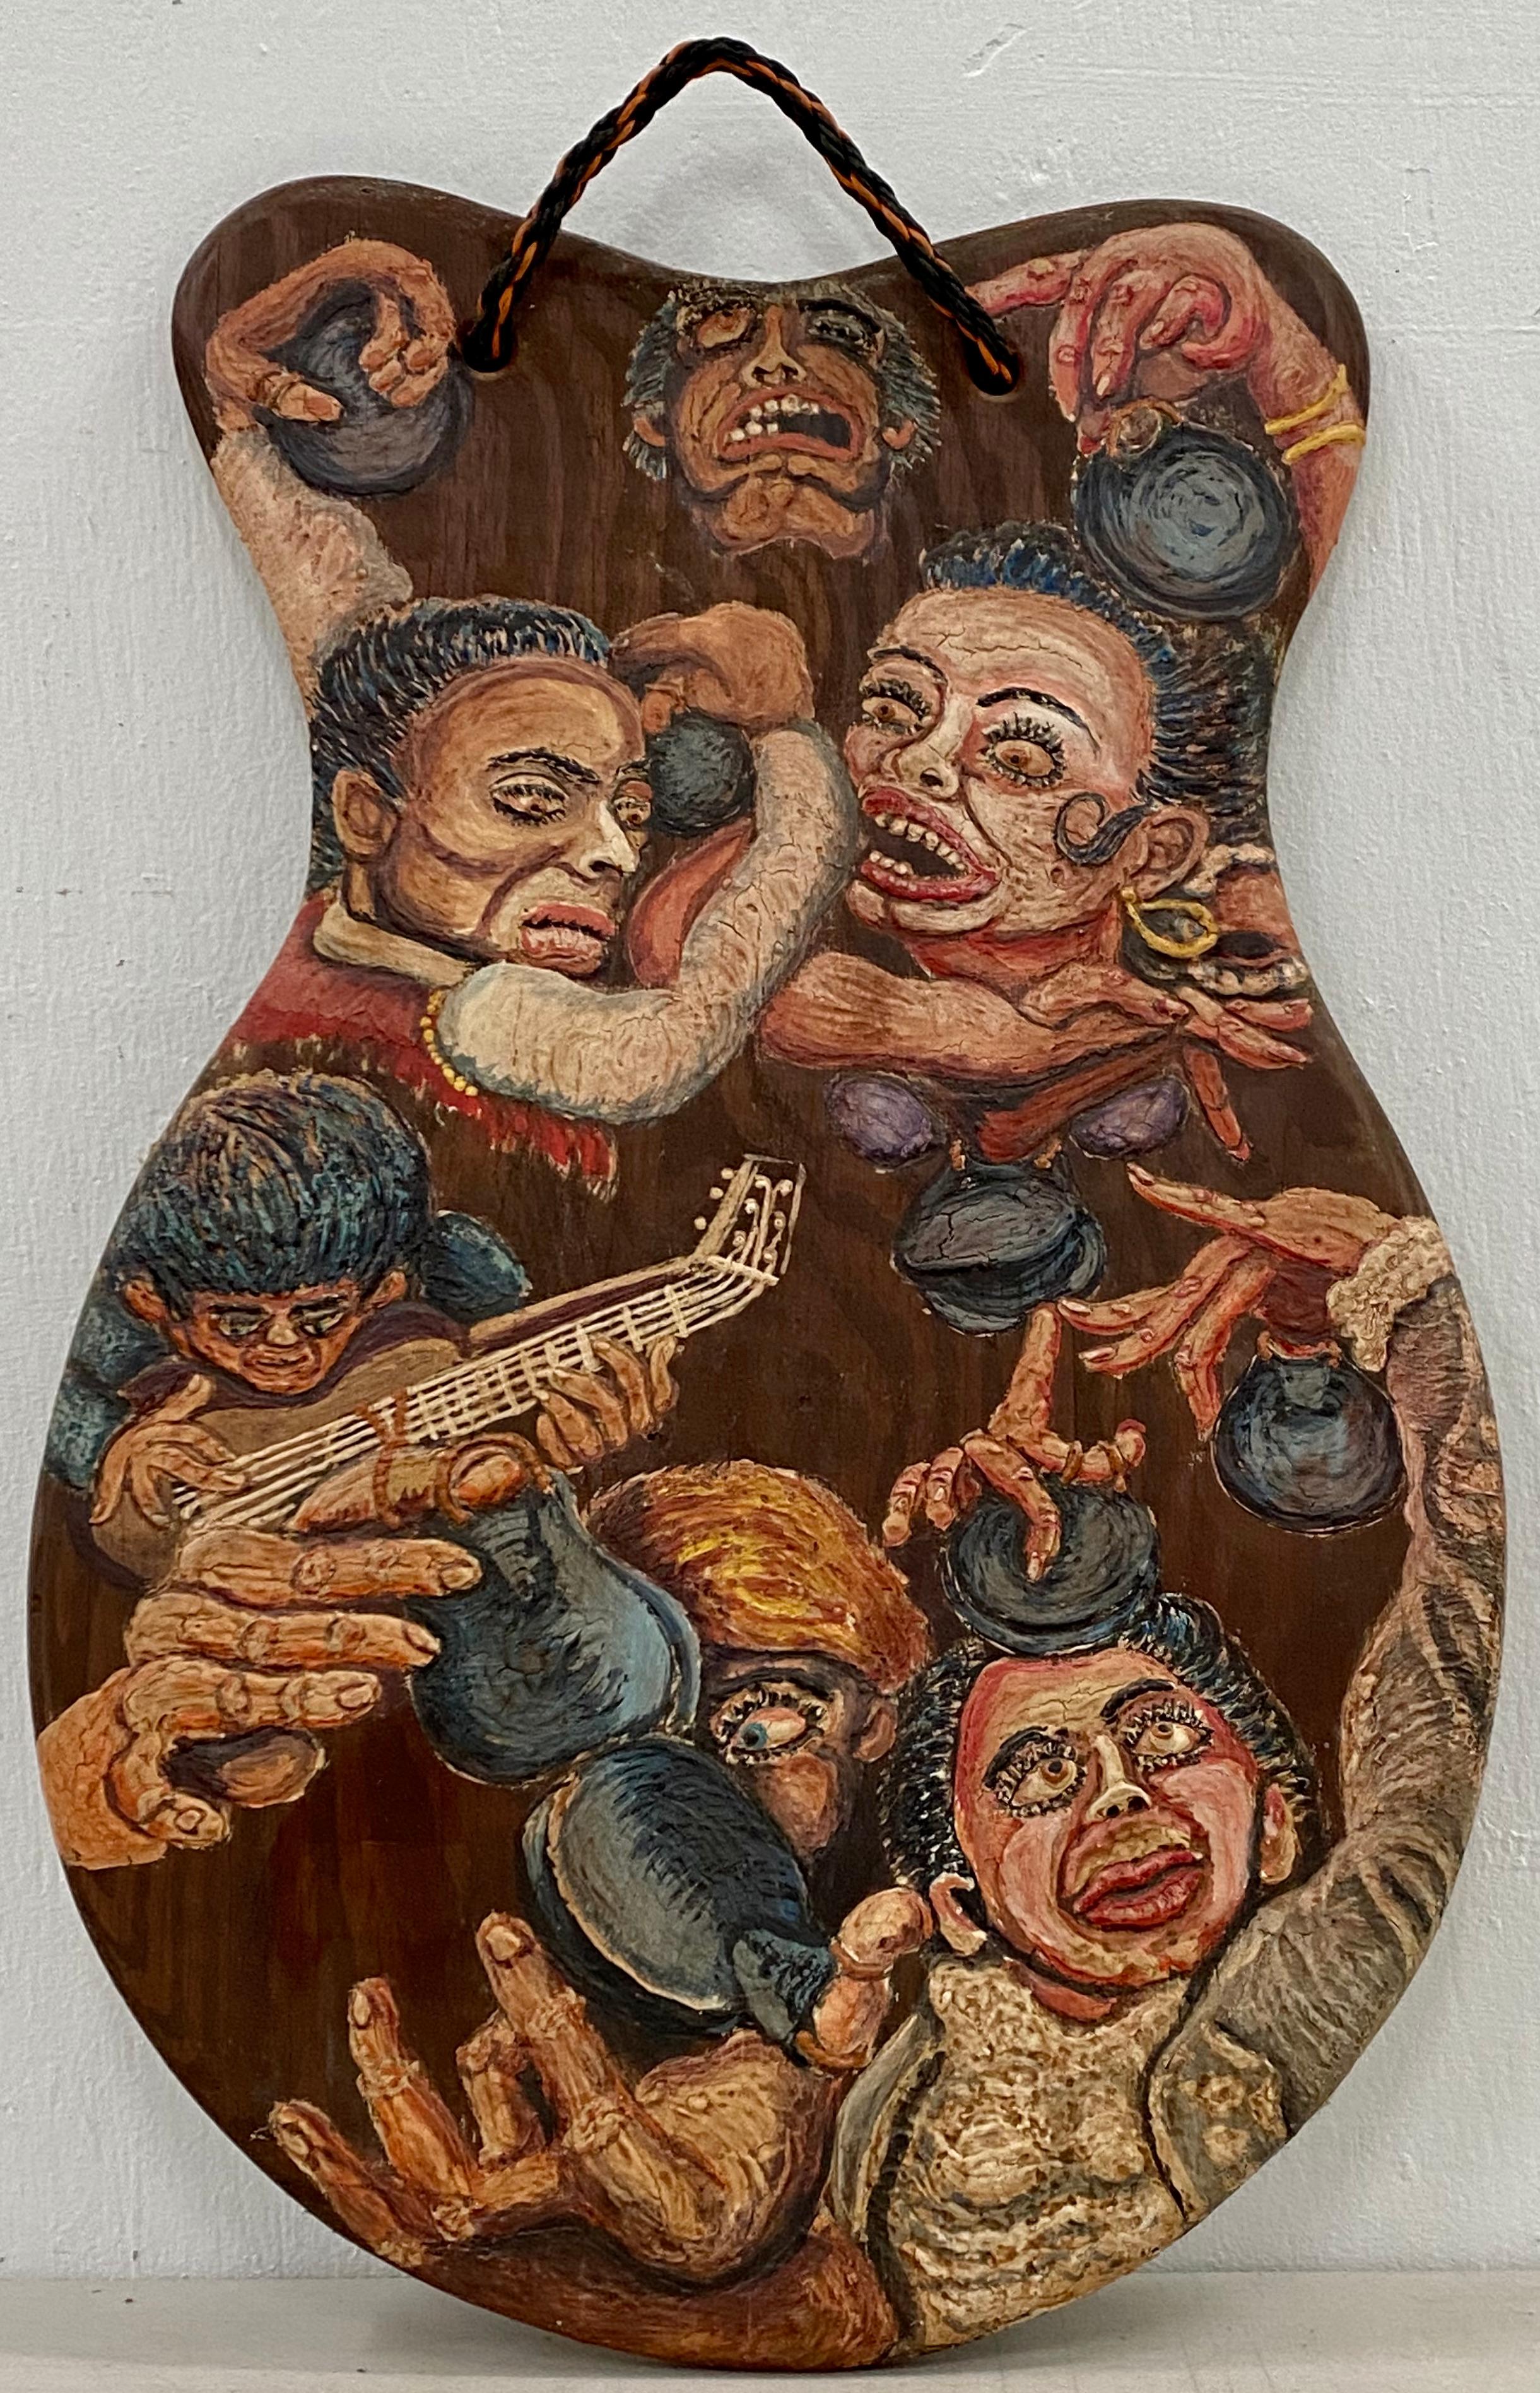 Richard Whalen (Américain, 1926-2009) 

"Carmen Amaya"

Peinture à l'huile originale c.1990

Créé sur un panneau en contreplaqué de bois avec une corde pour le suspendre 

L'artiste utilise une technique d'empâtement unique qui met en valeur les